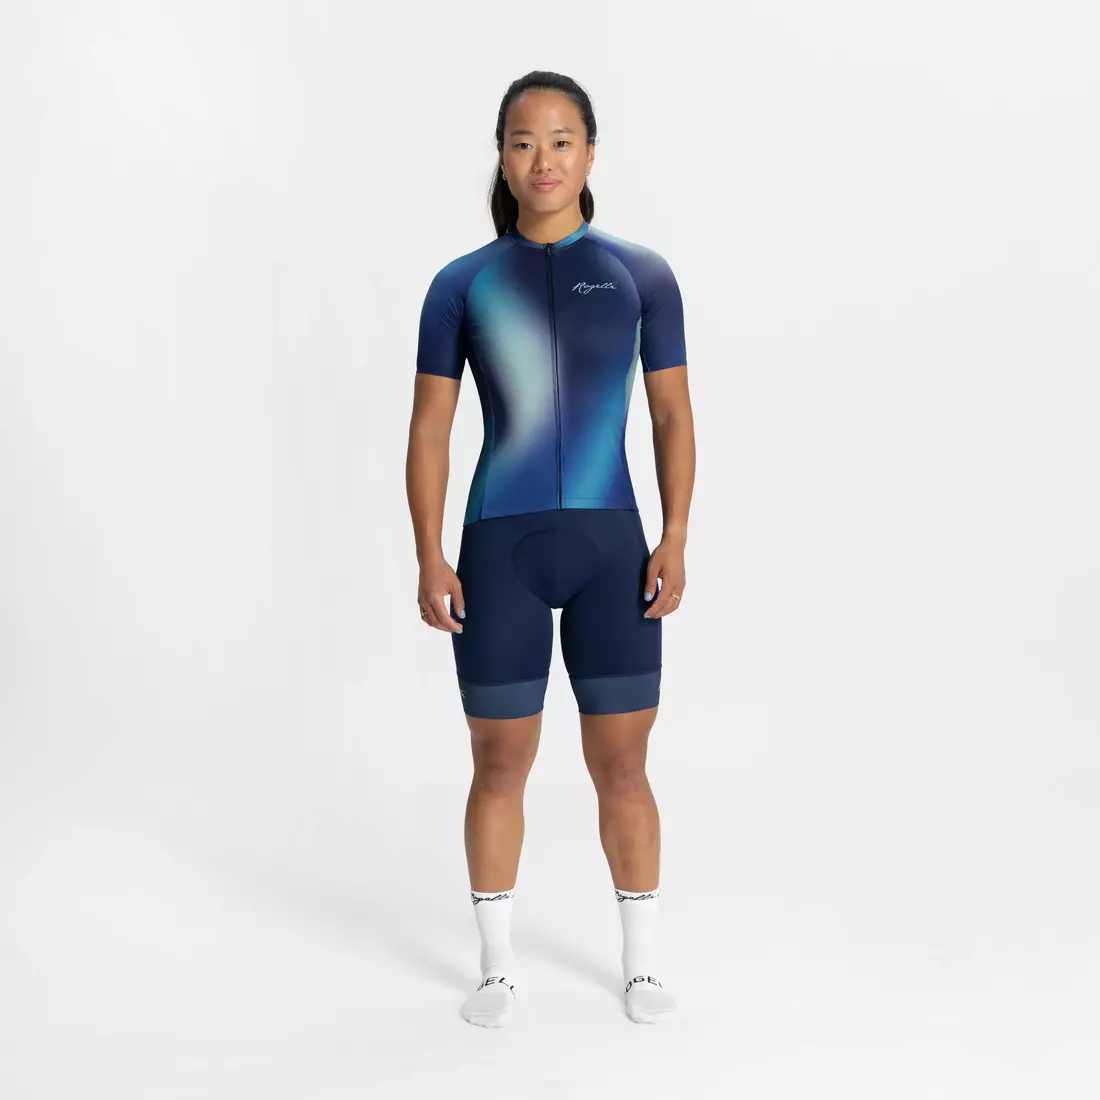 Tricou femei Rogelli pentru ciclism AURORA albastru